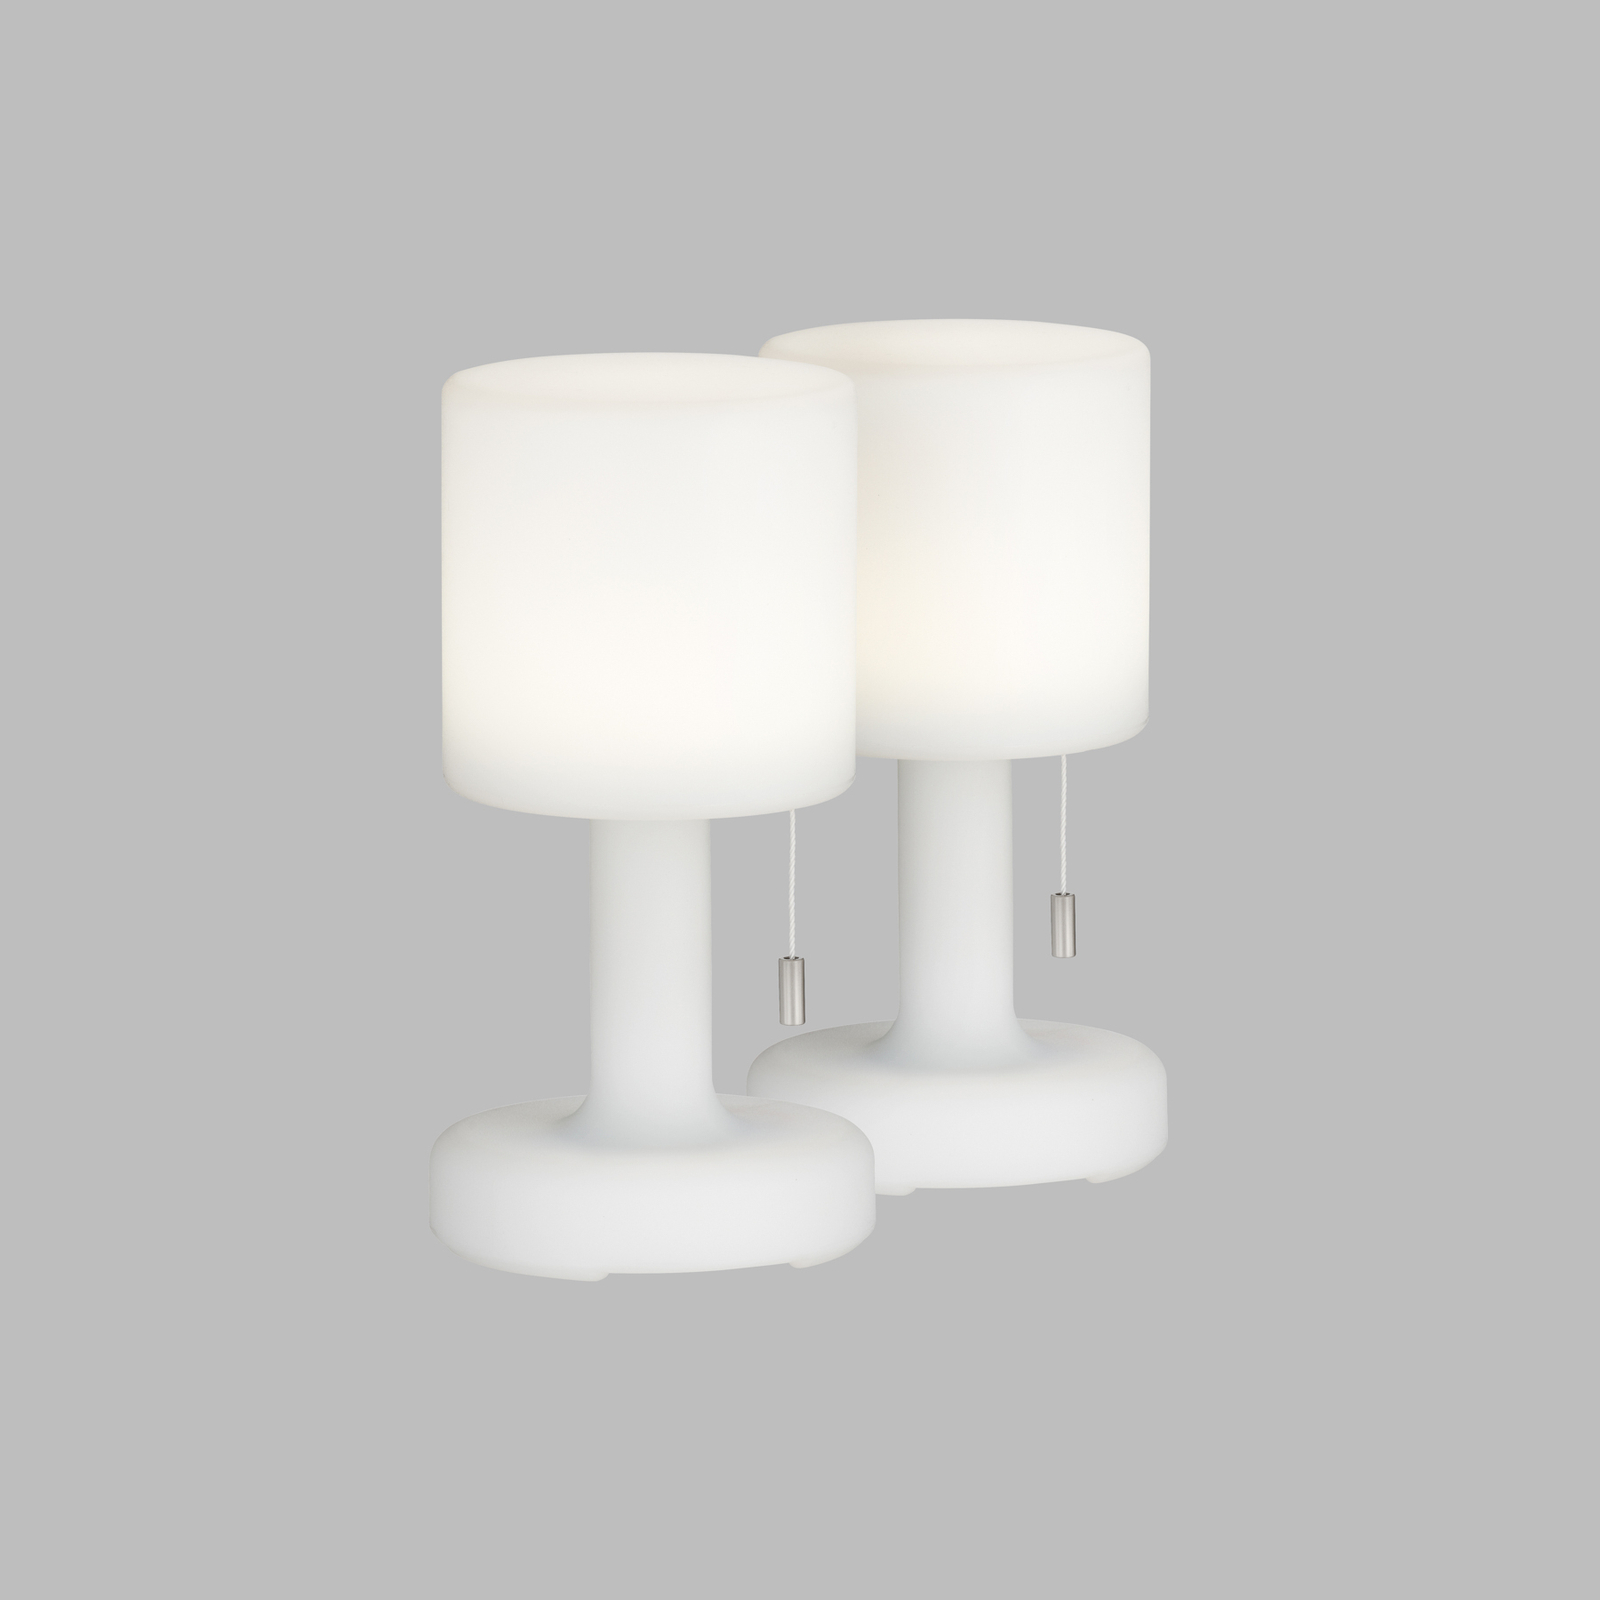 LED-akkupöytälamppu Termoli valkoinen lieriö 2 kpl